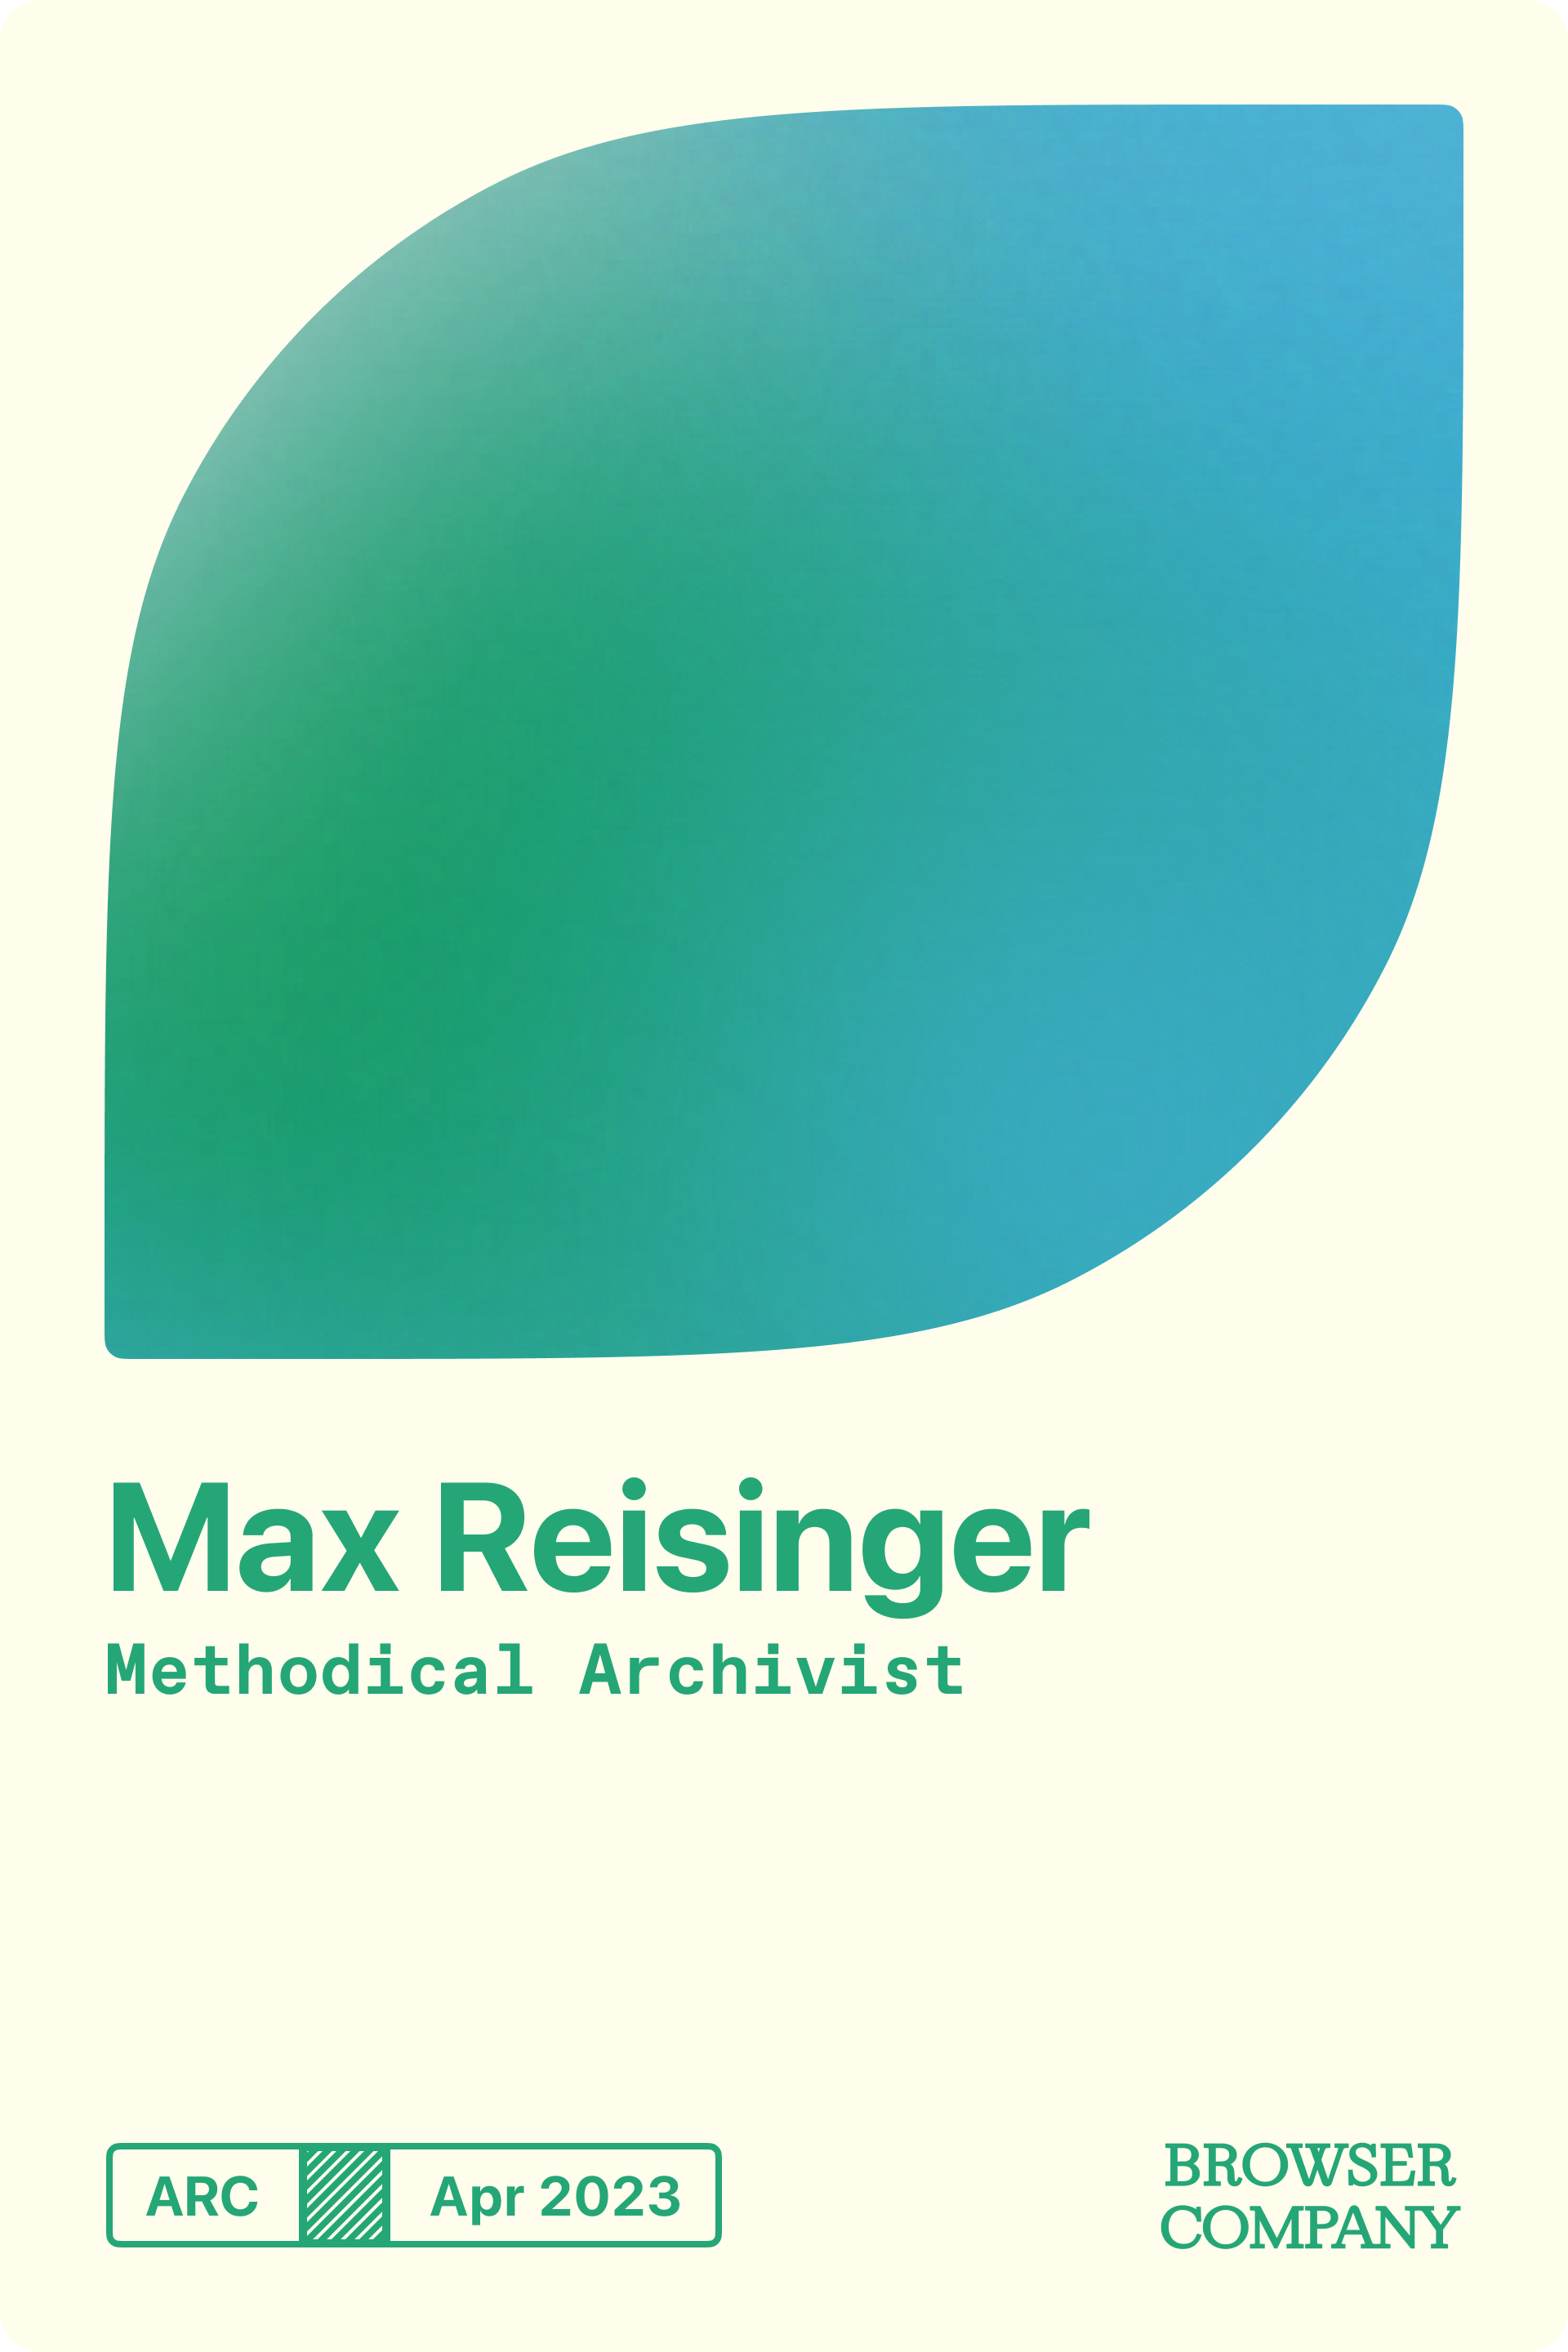 Max Reisinger's Member Card